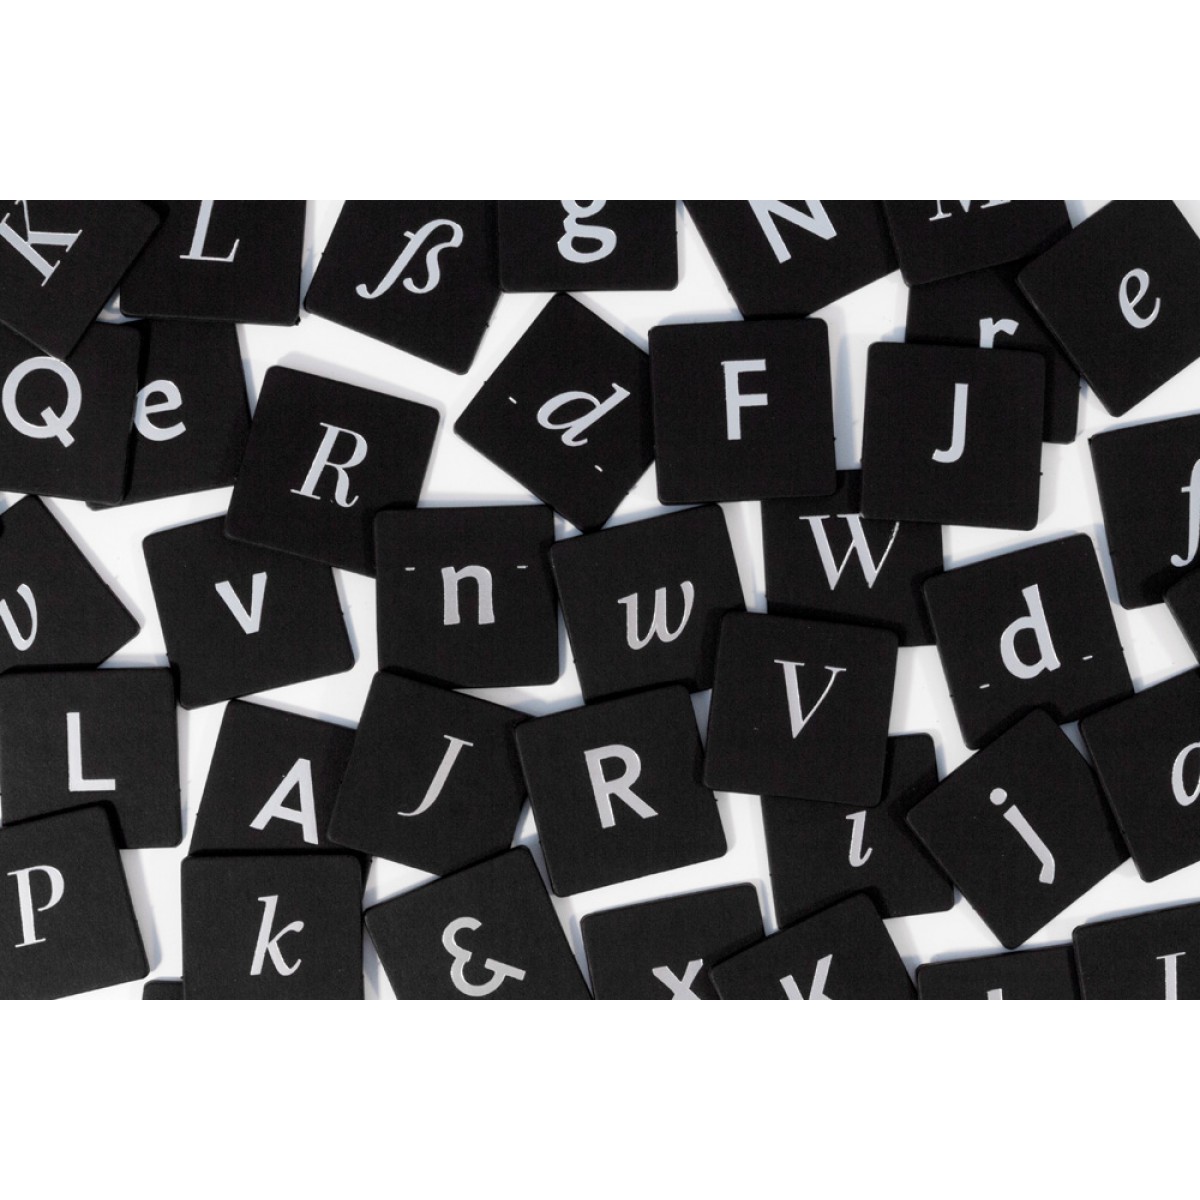 TypoMemo Spielbox
Vom Verstecken und Entdecken typografischer Details